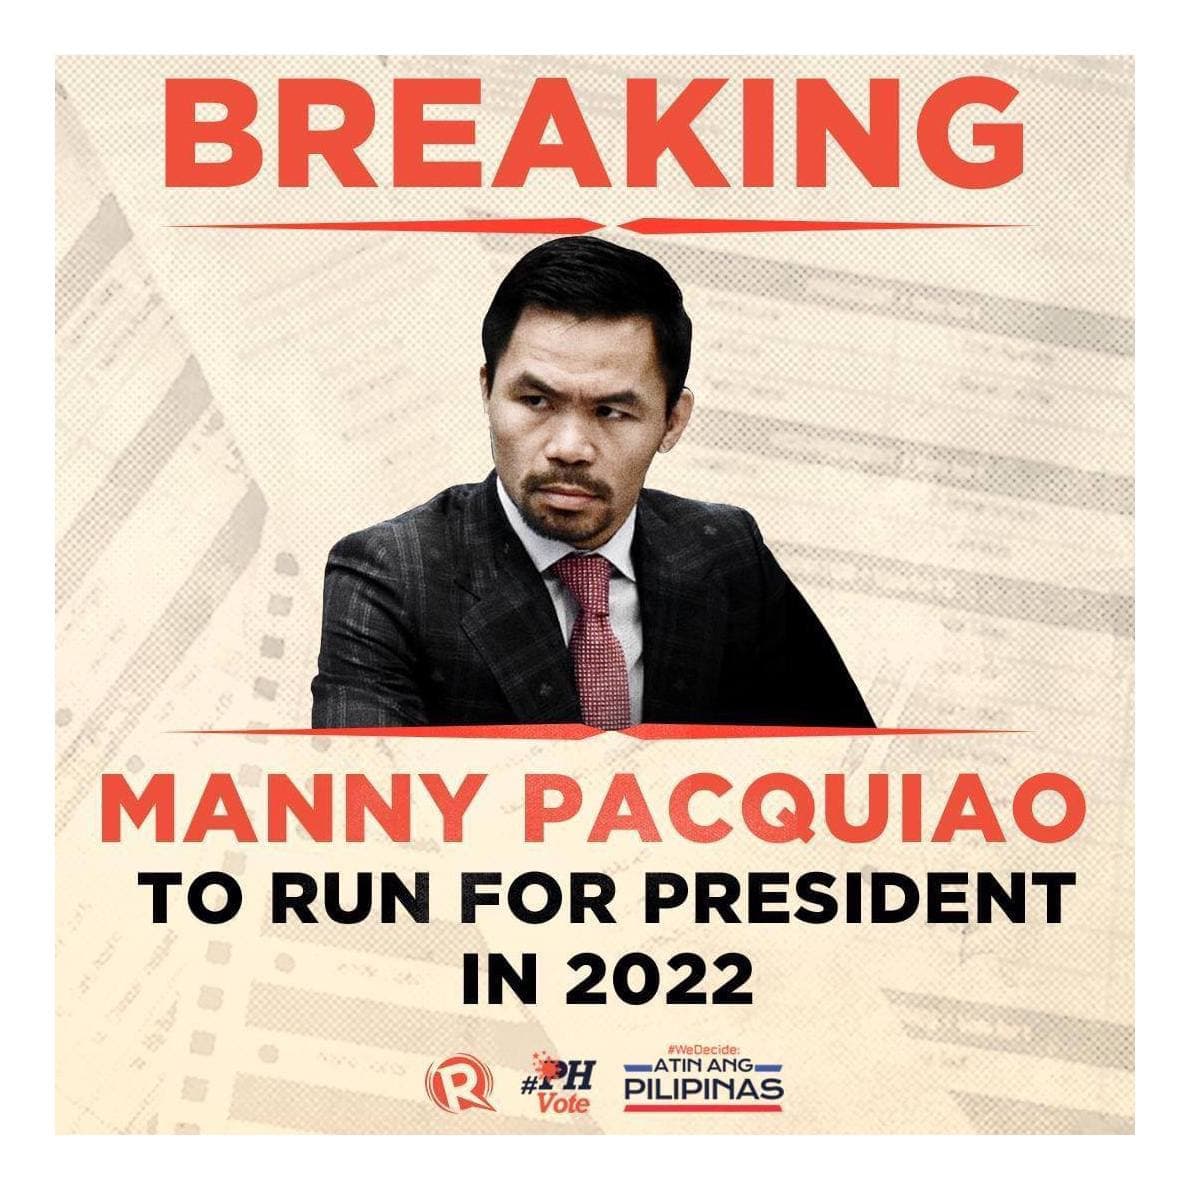 កីឡាករប្រដាល់ដ៏ល្បីរបស់ហ្វីលីពីន Manny Pacquiao ប្រកាសនៅថ្ងៃទី១៩ កញ្ញា ថាខ្លួននឹងឈរឈ្មោះនៅក្នុងការបោះឆ្នោតប្រធានាធិបតីអាណត្តិក្រោយ